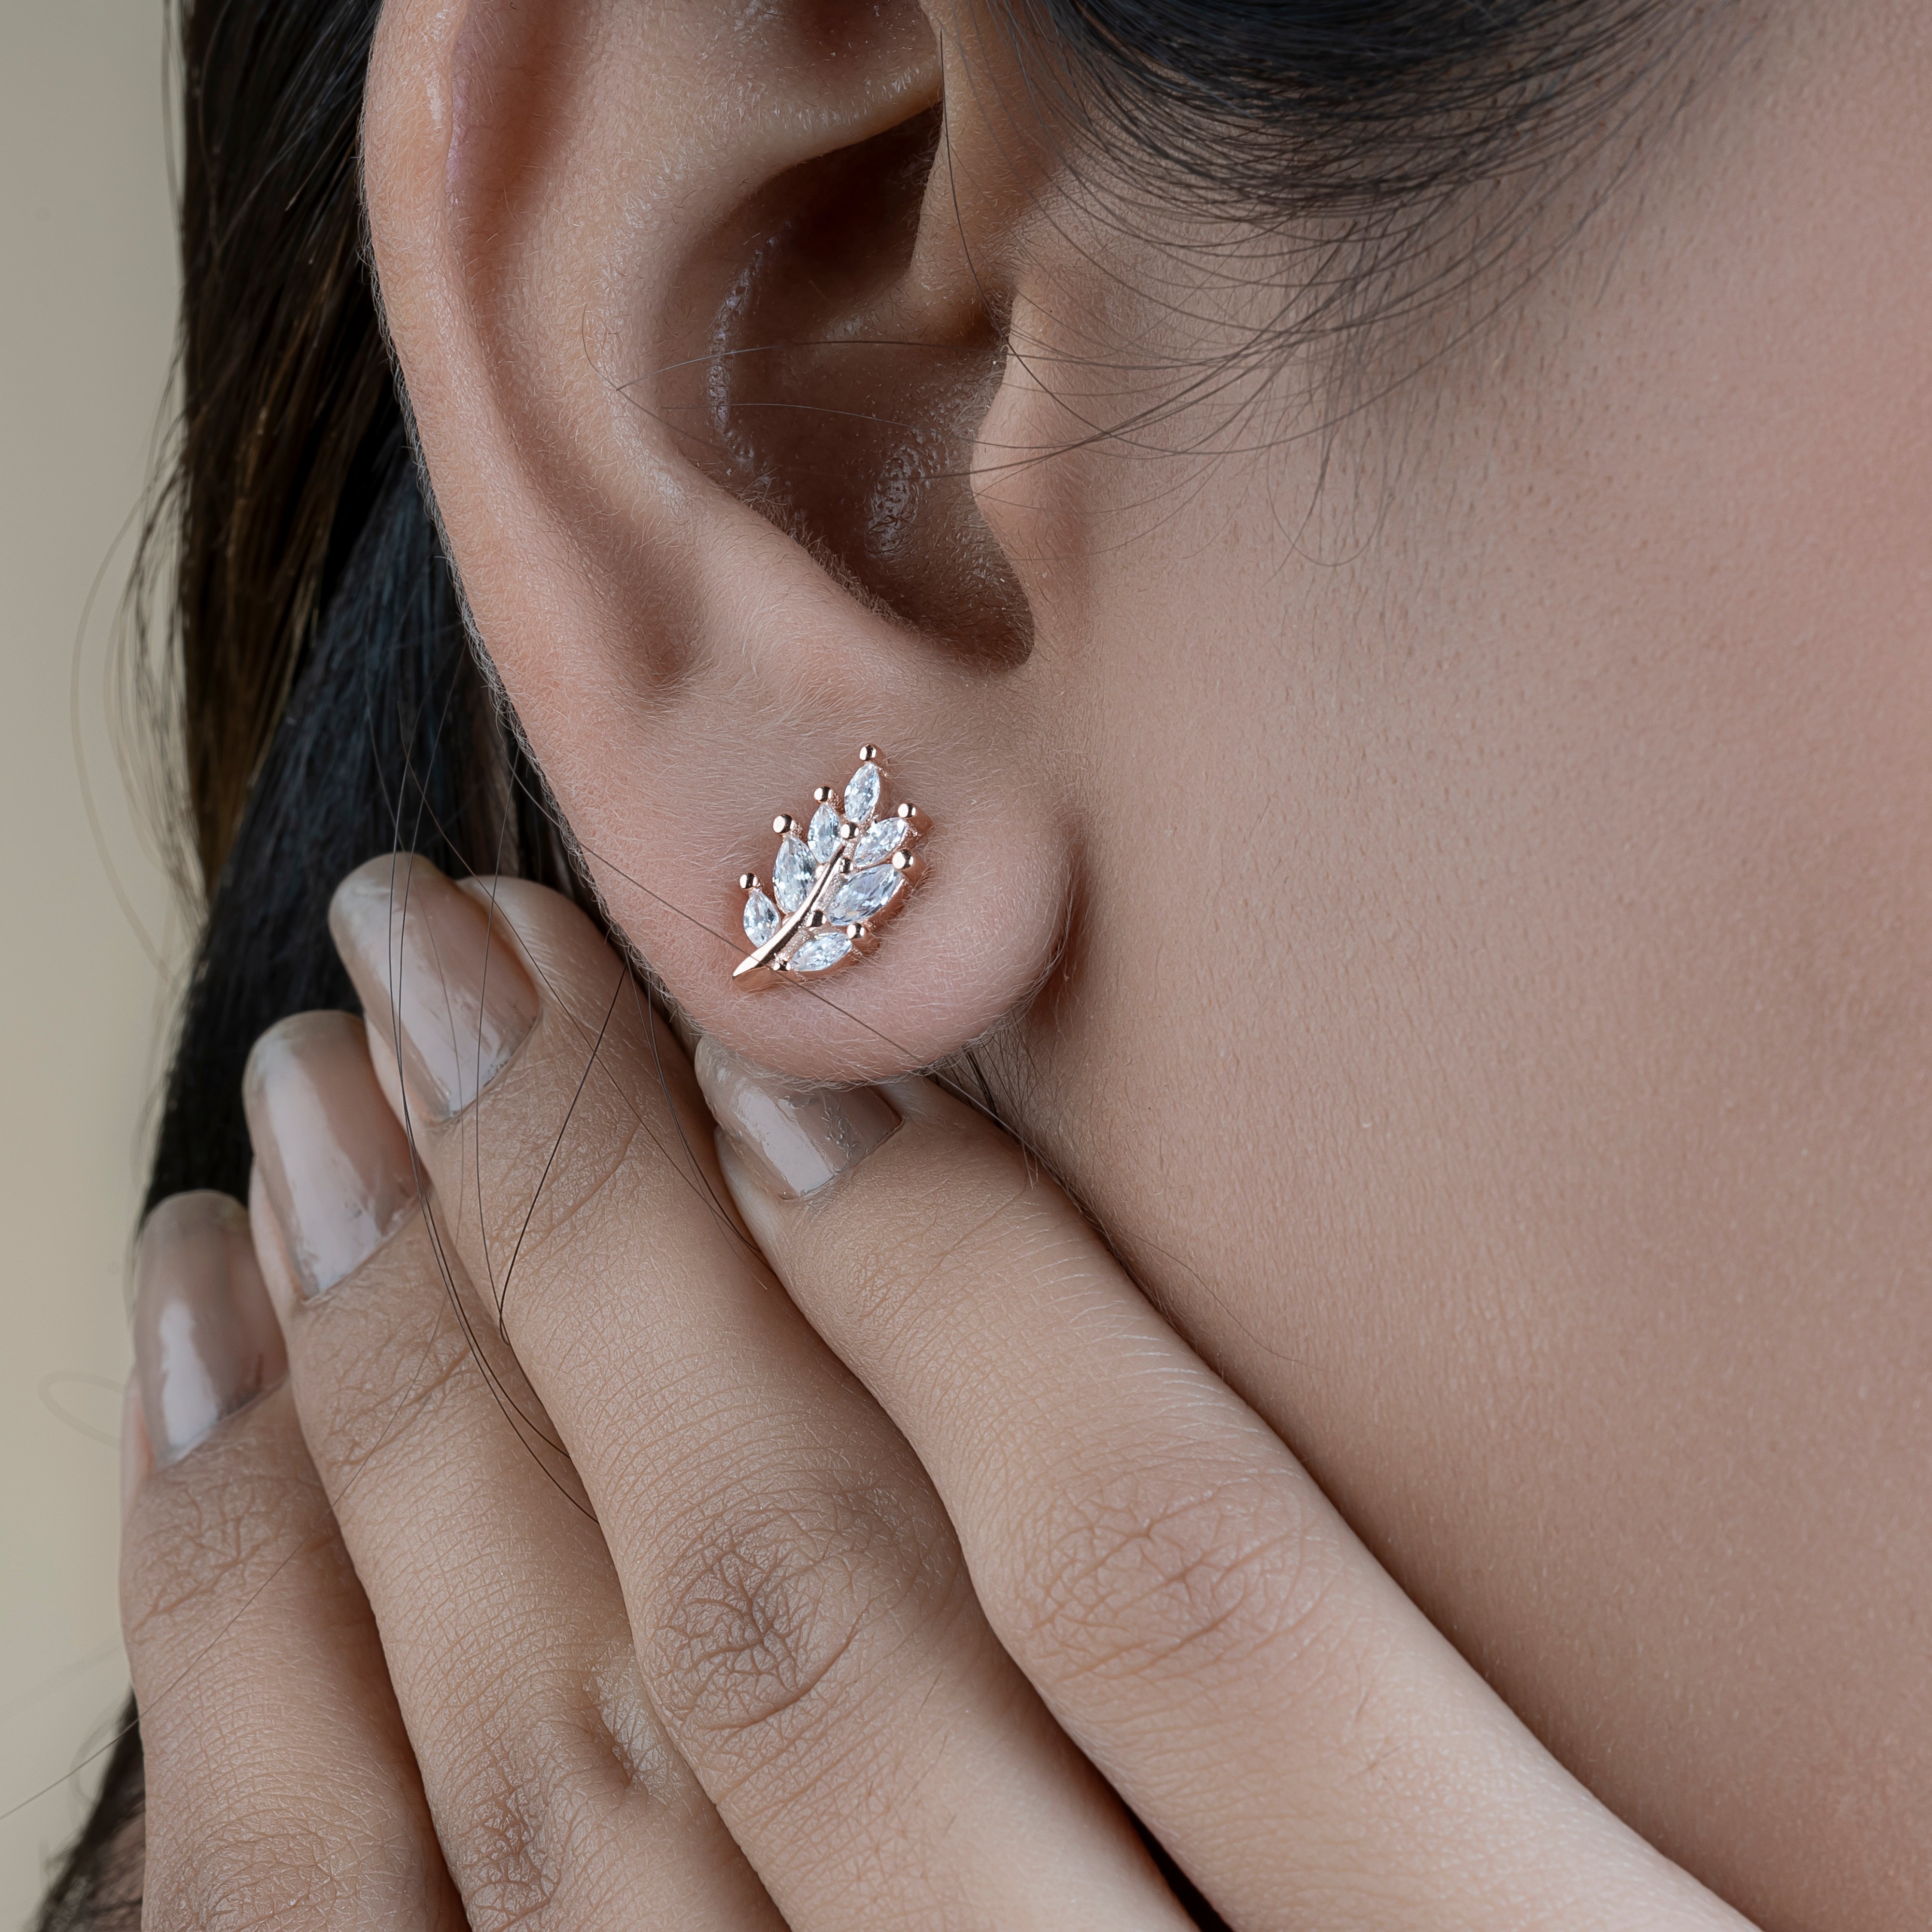 Silver Rose Leaf Stud Earrings